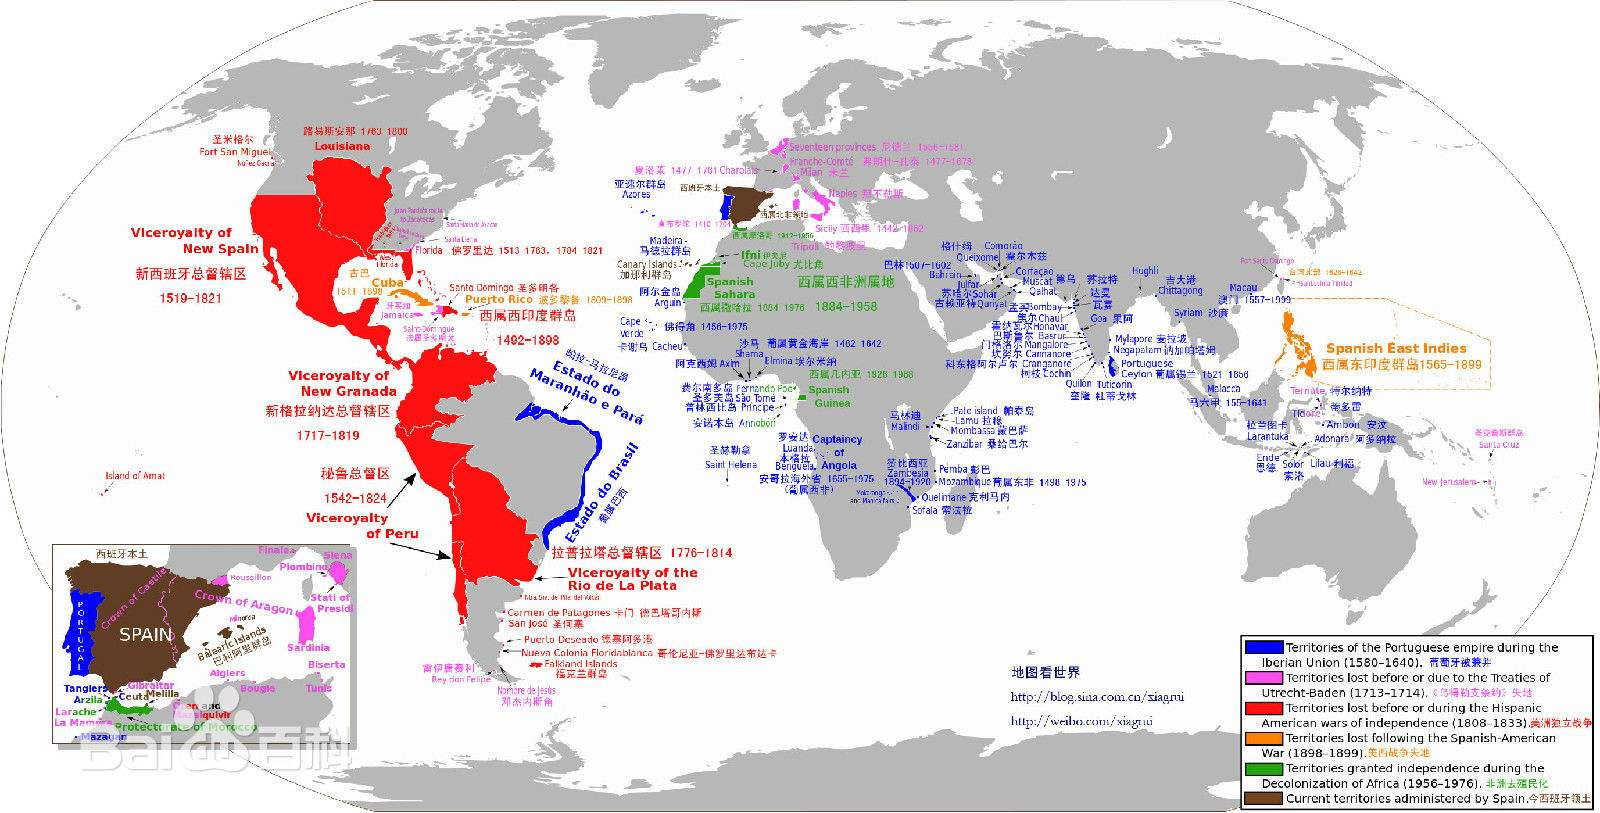 西班牙殖民帝国示意图.红色区域即为西班牙在美洲的殖民地